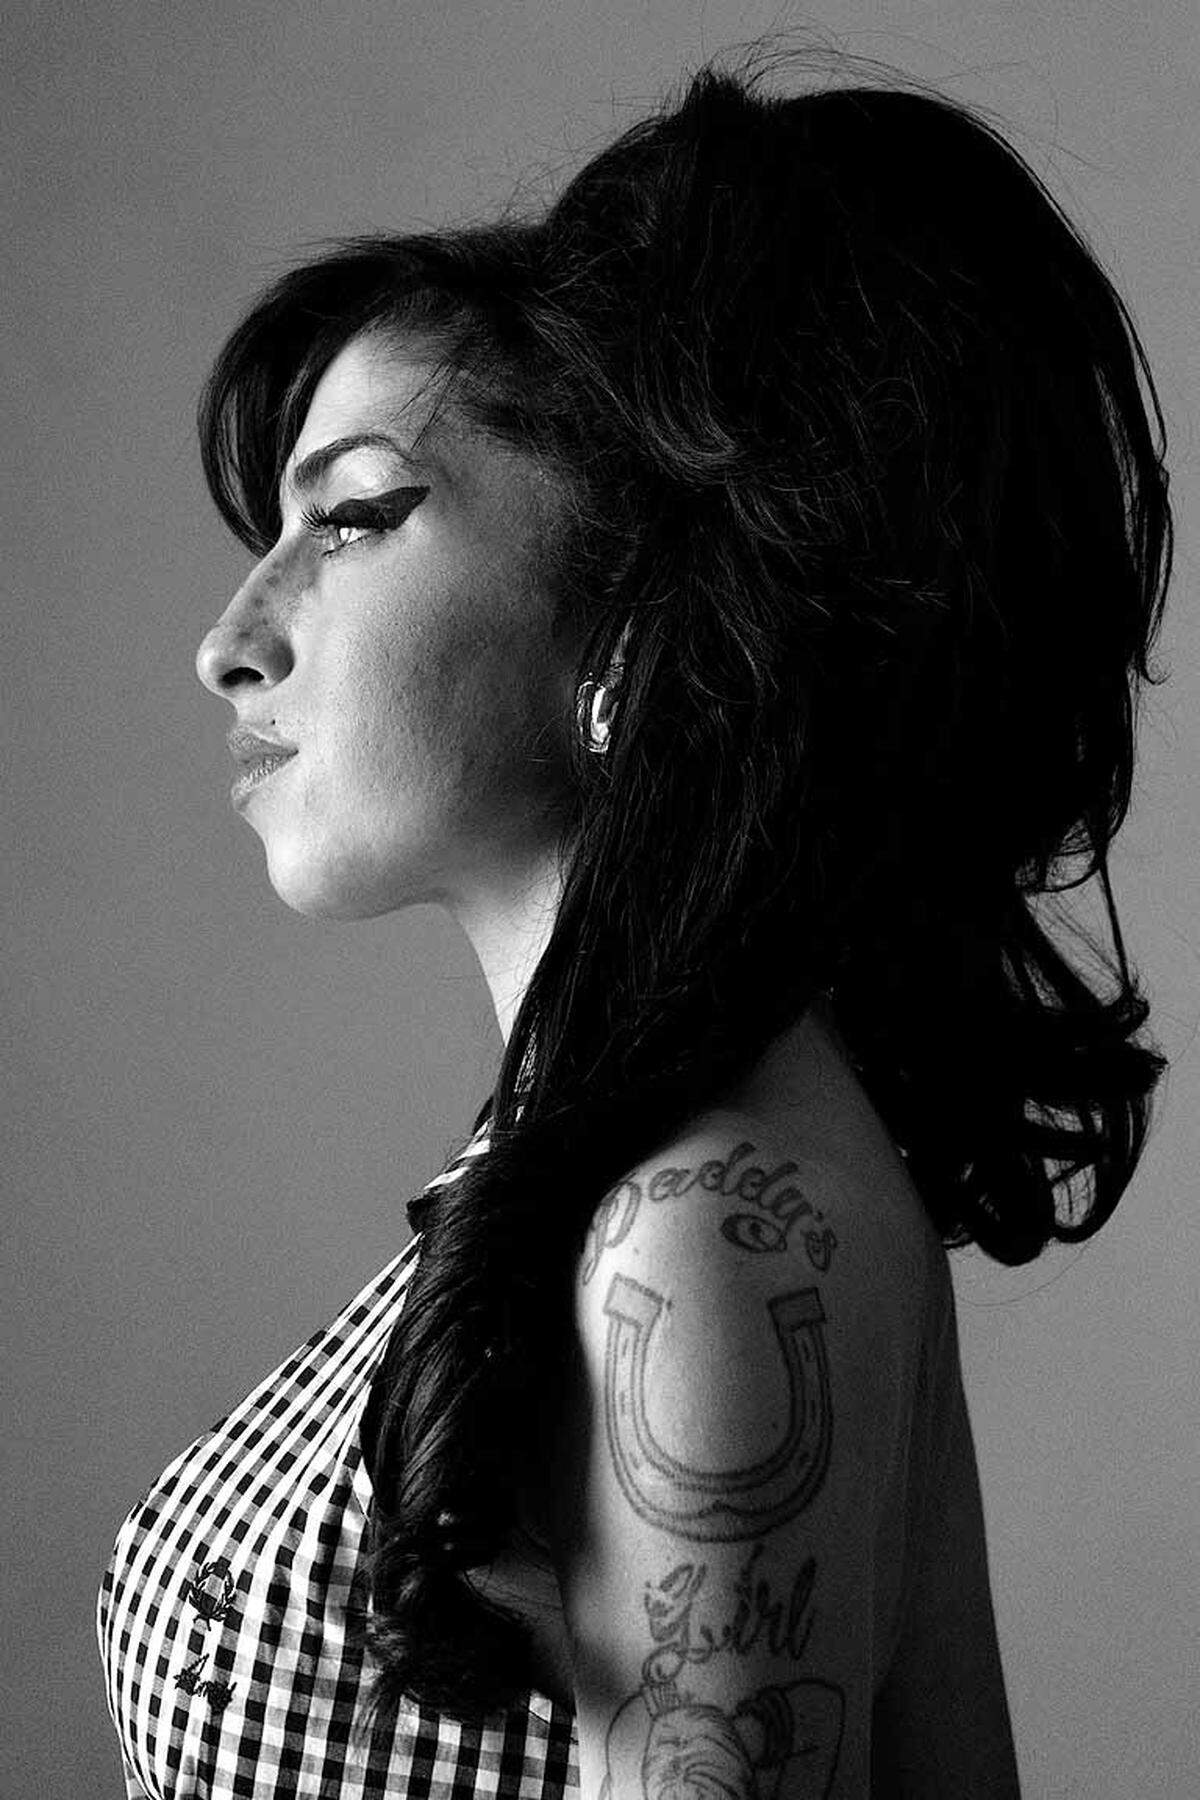 Bryan Adams ist Mit-Herausgeber des Zoo Magazine, einer Zeitschrift für Fotografie, die er 2004 in Berlin gründete. Amy Winehouse, London 2010